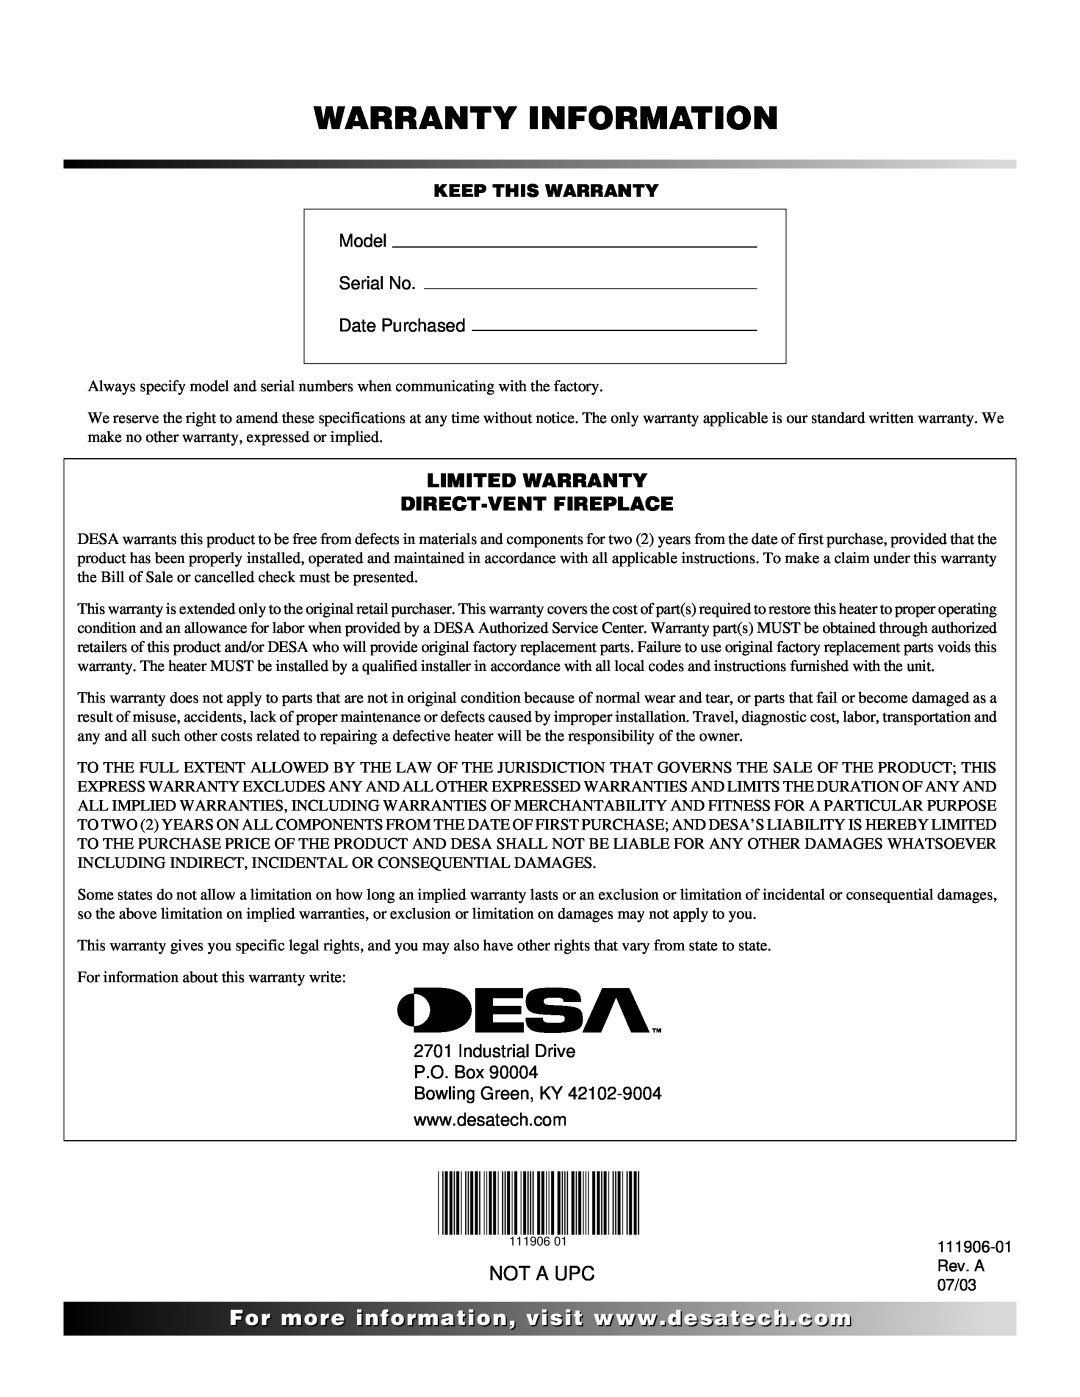 Desa (V)V42NA(1) installation manual Warranty Information, Limited Warranty Direct-Ventfireplace, Not A Upc 